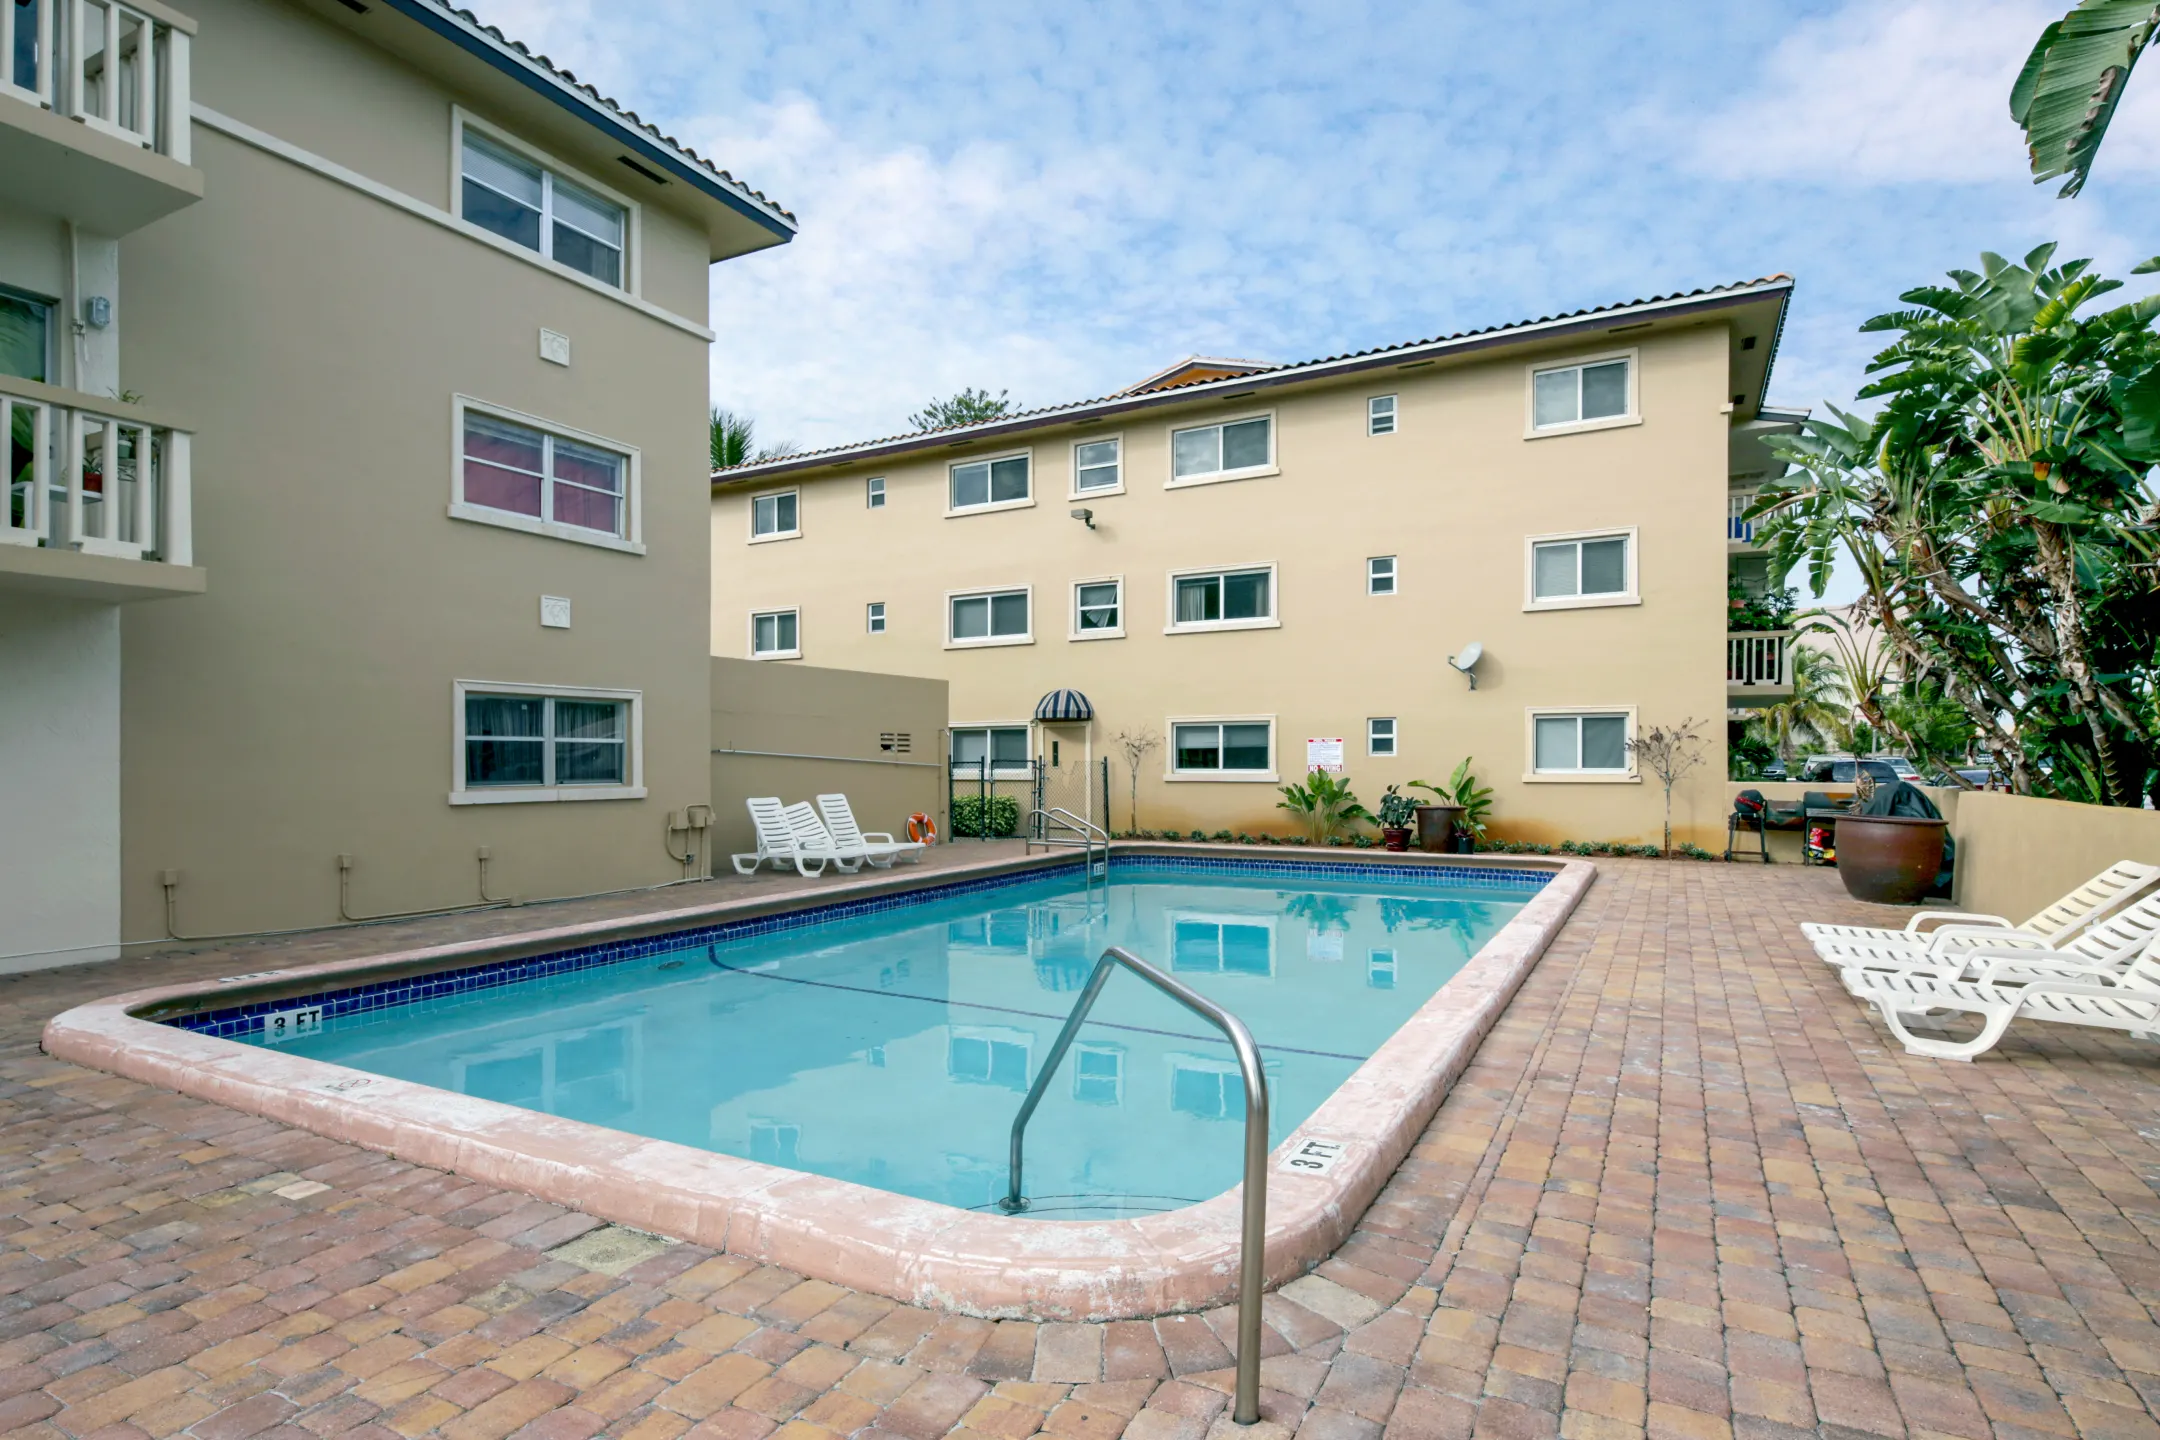 Pool - The Apartment People - Deerfield Beach, FL